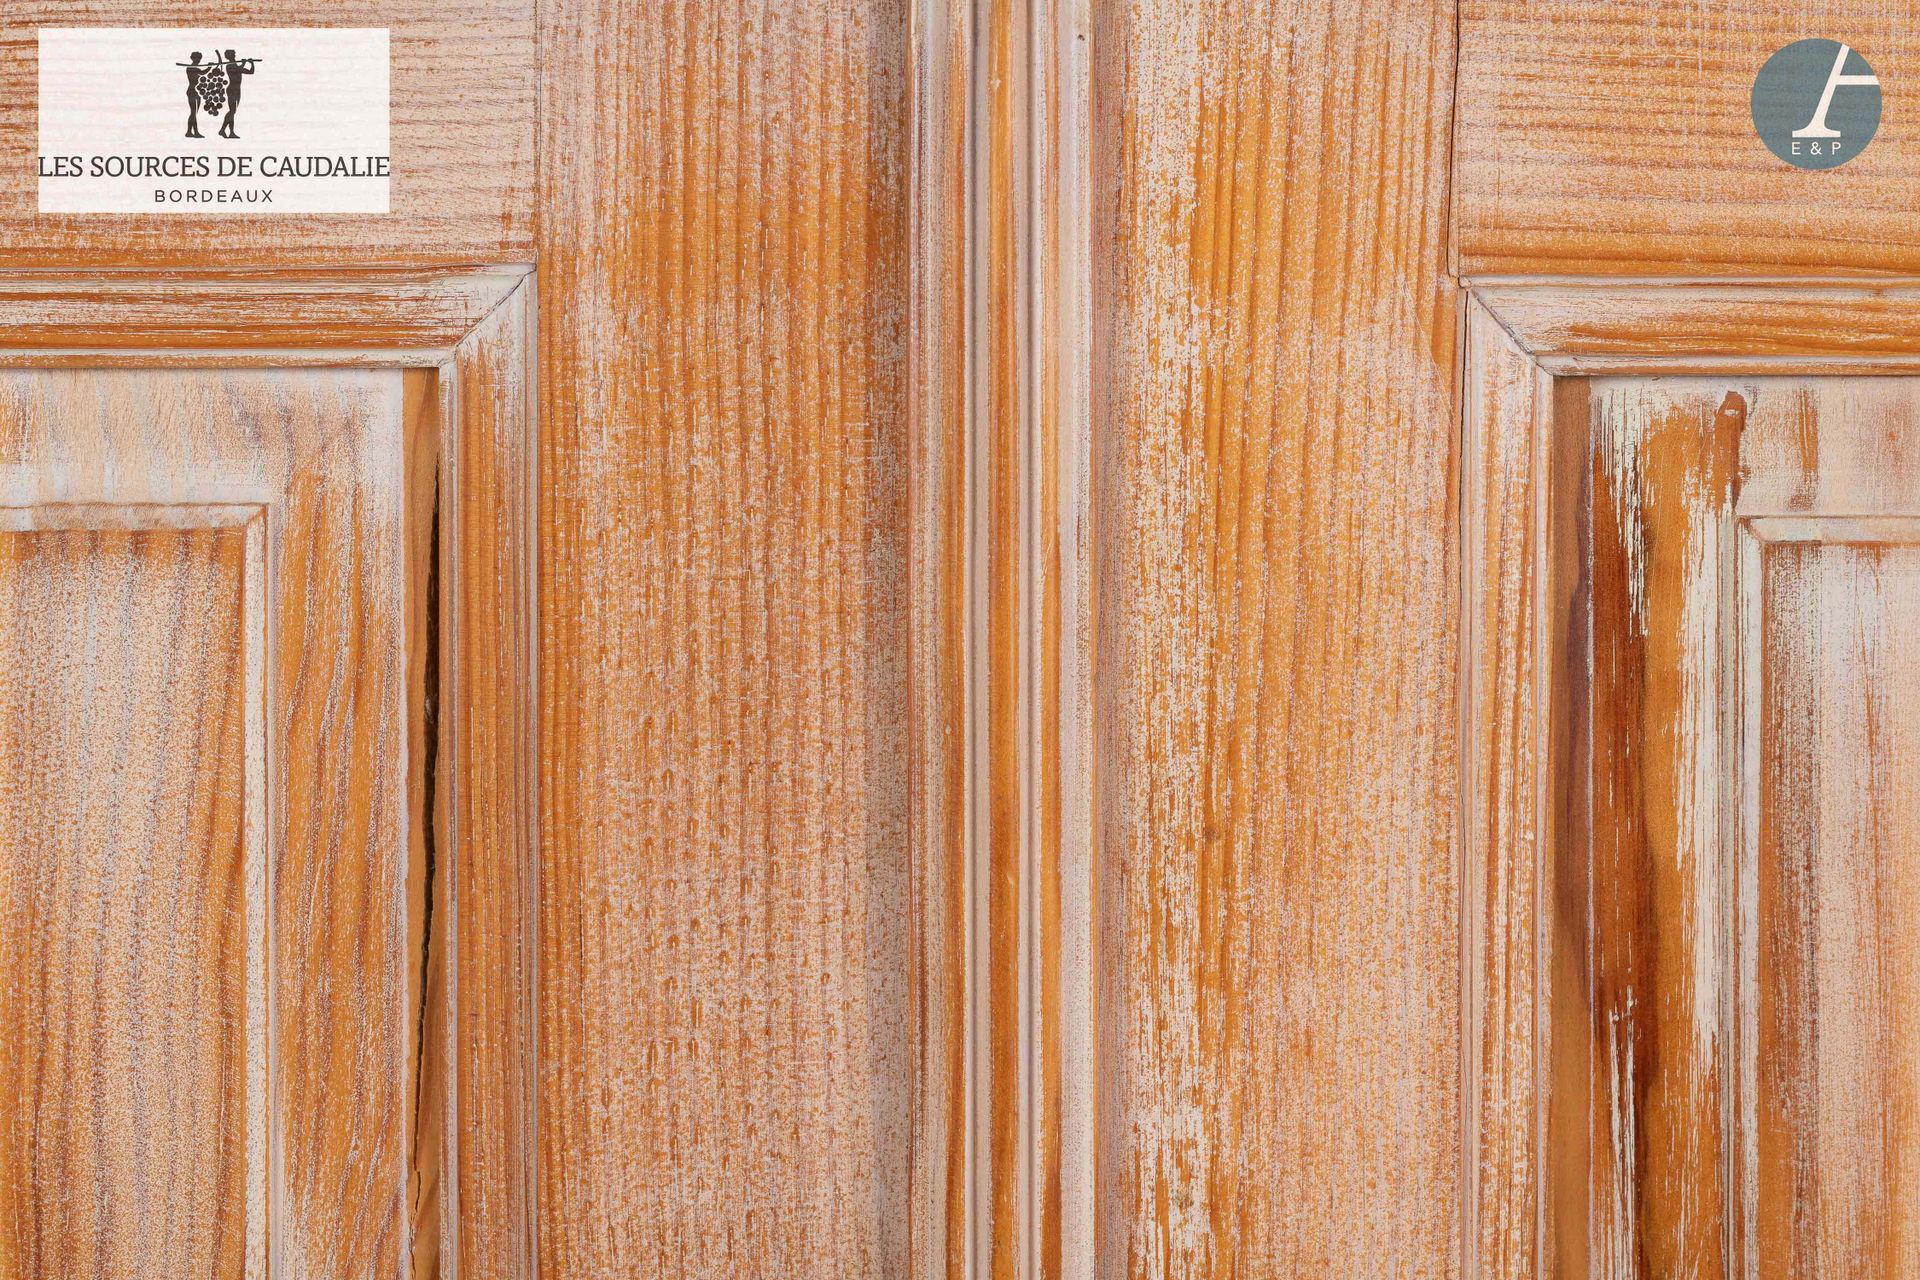 Null 源自Caudalie "Les Cépages"（Maison du Lièvre）的26号房间。
一对橱柜门，采用模制和雕刻的天然木材，染成白色。
&hellip;